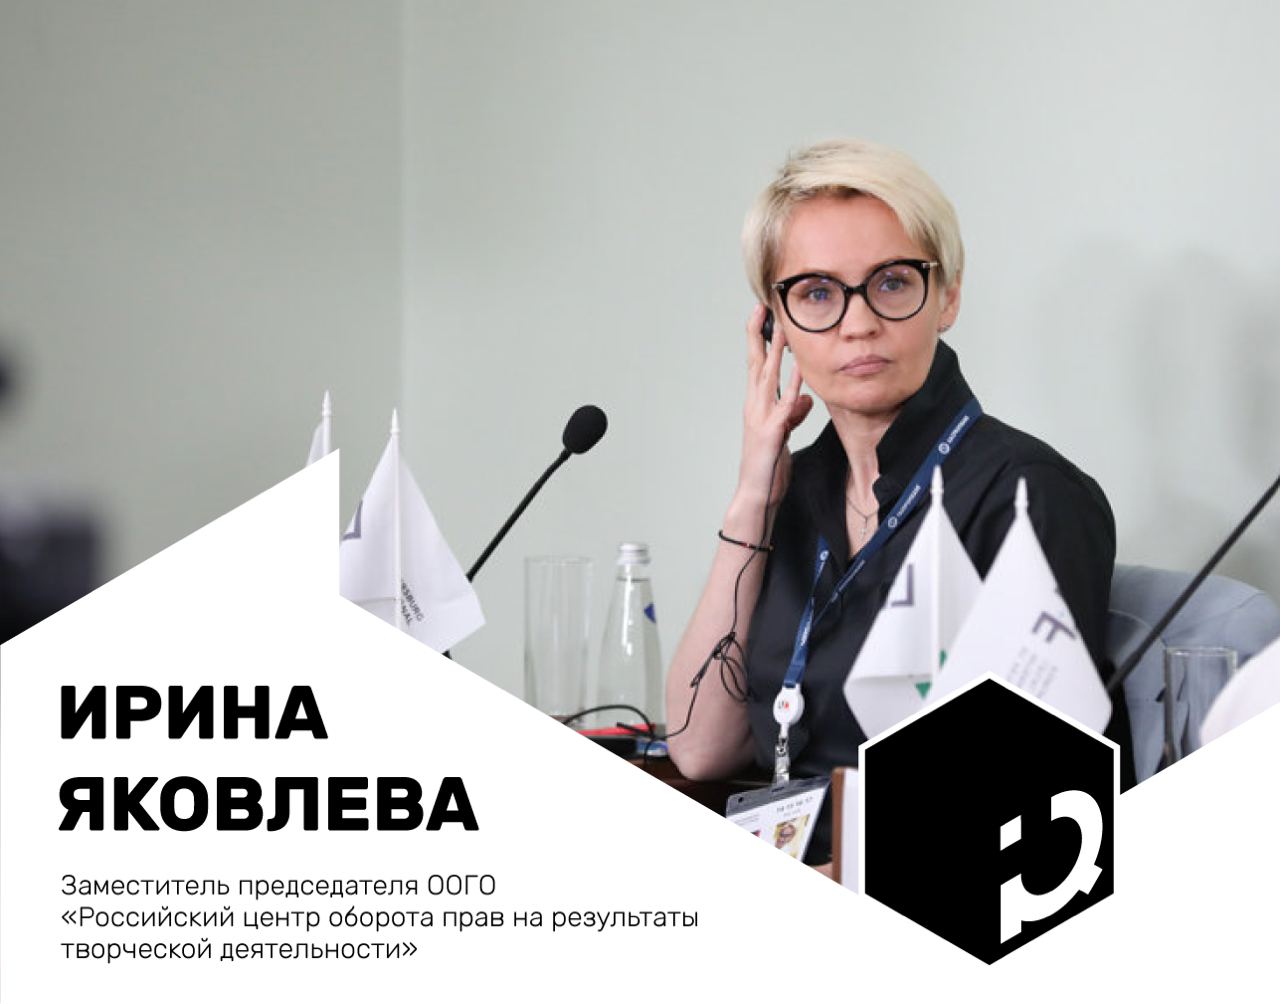 Российский центр оборота прав на Результаты творческой деятельности